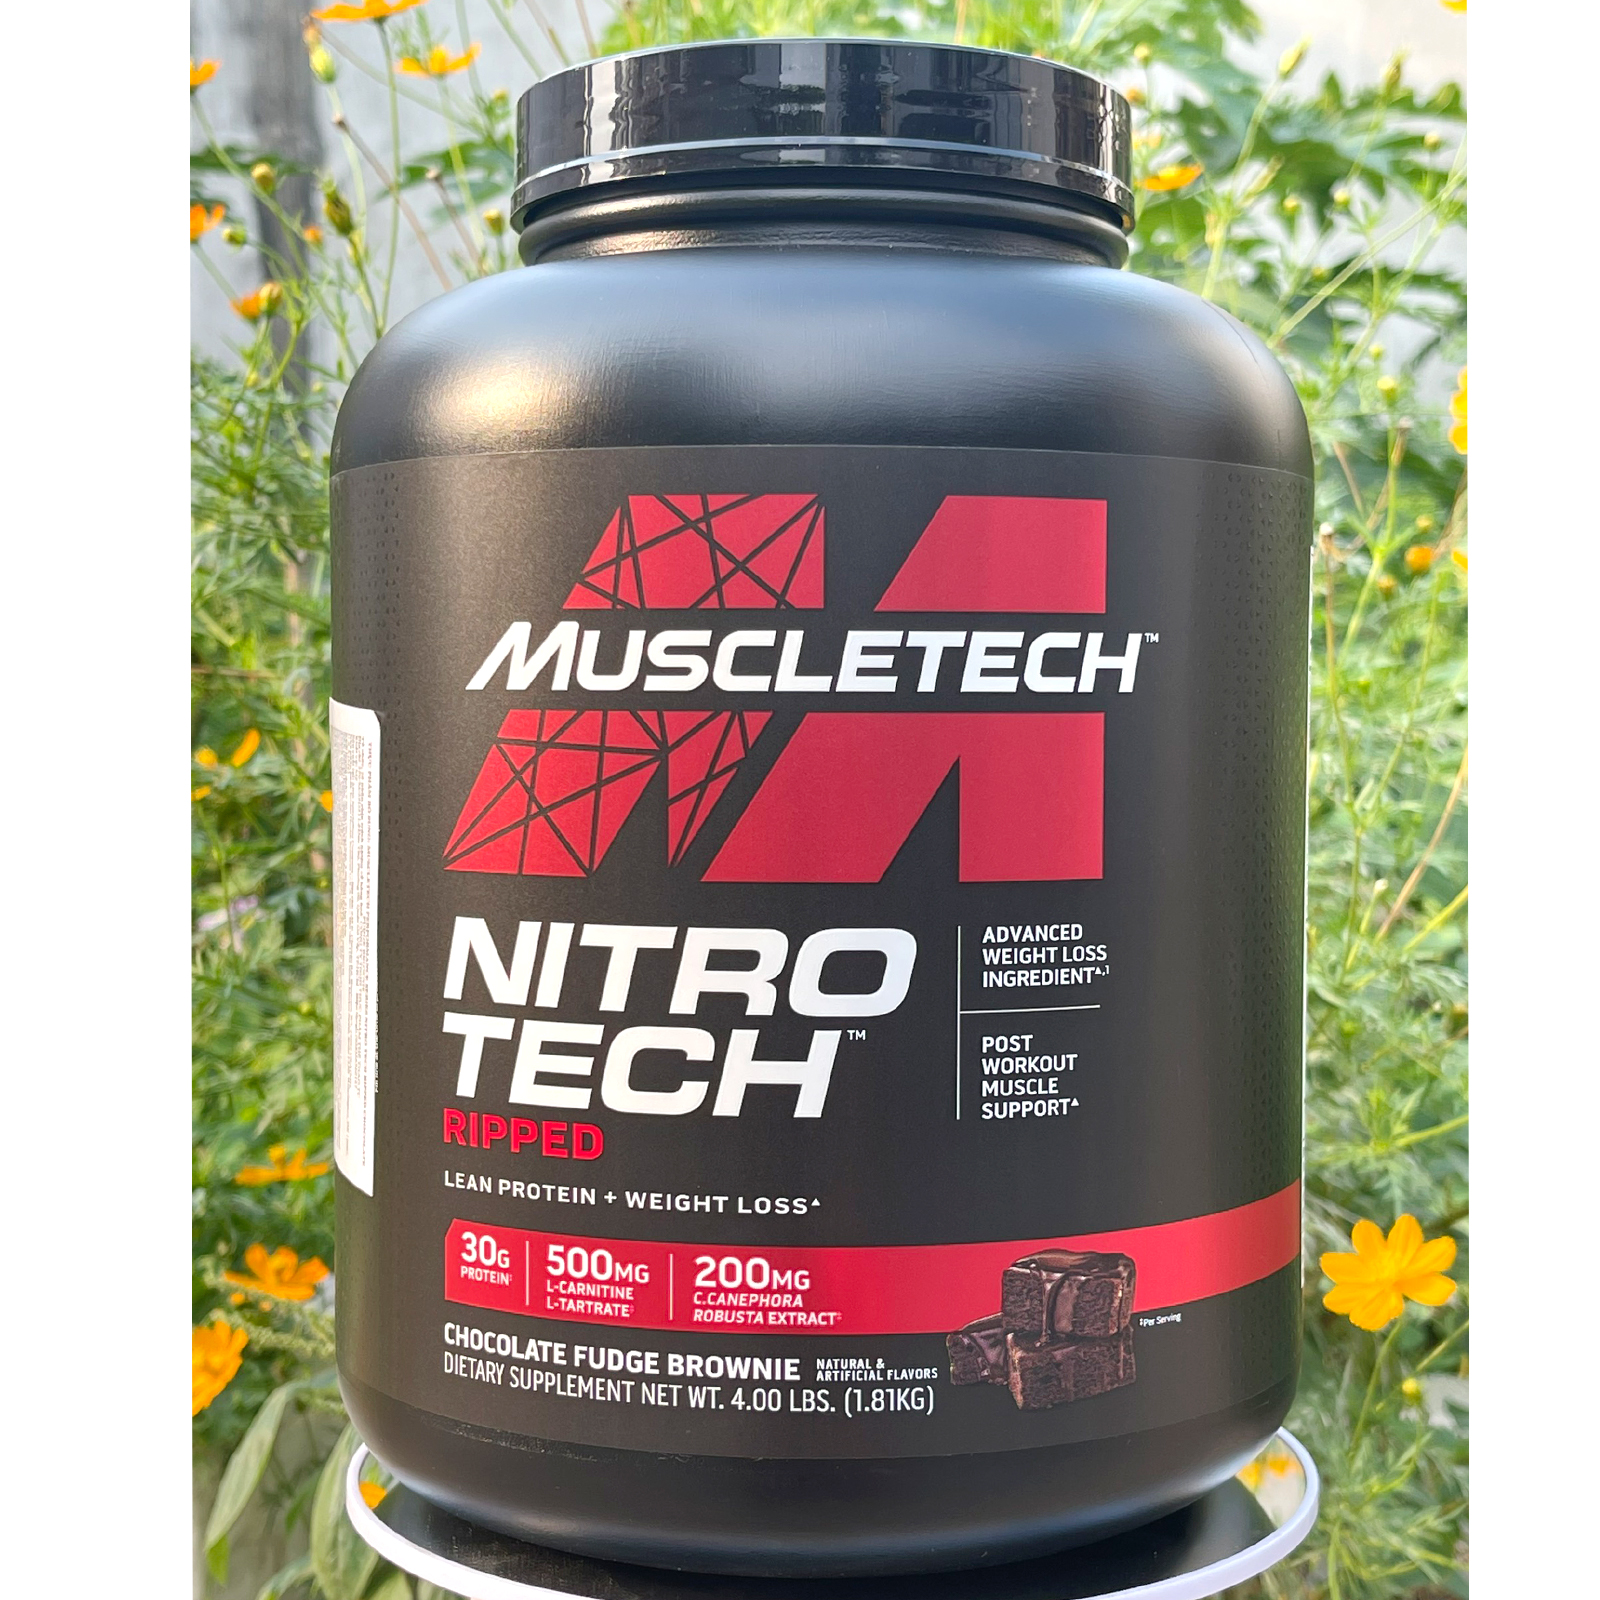 Sữa tăng cơ whey protein nitro tech ripped của muscle tech hộp 42 lần dùng - ảnh sản phẩm 2